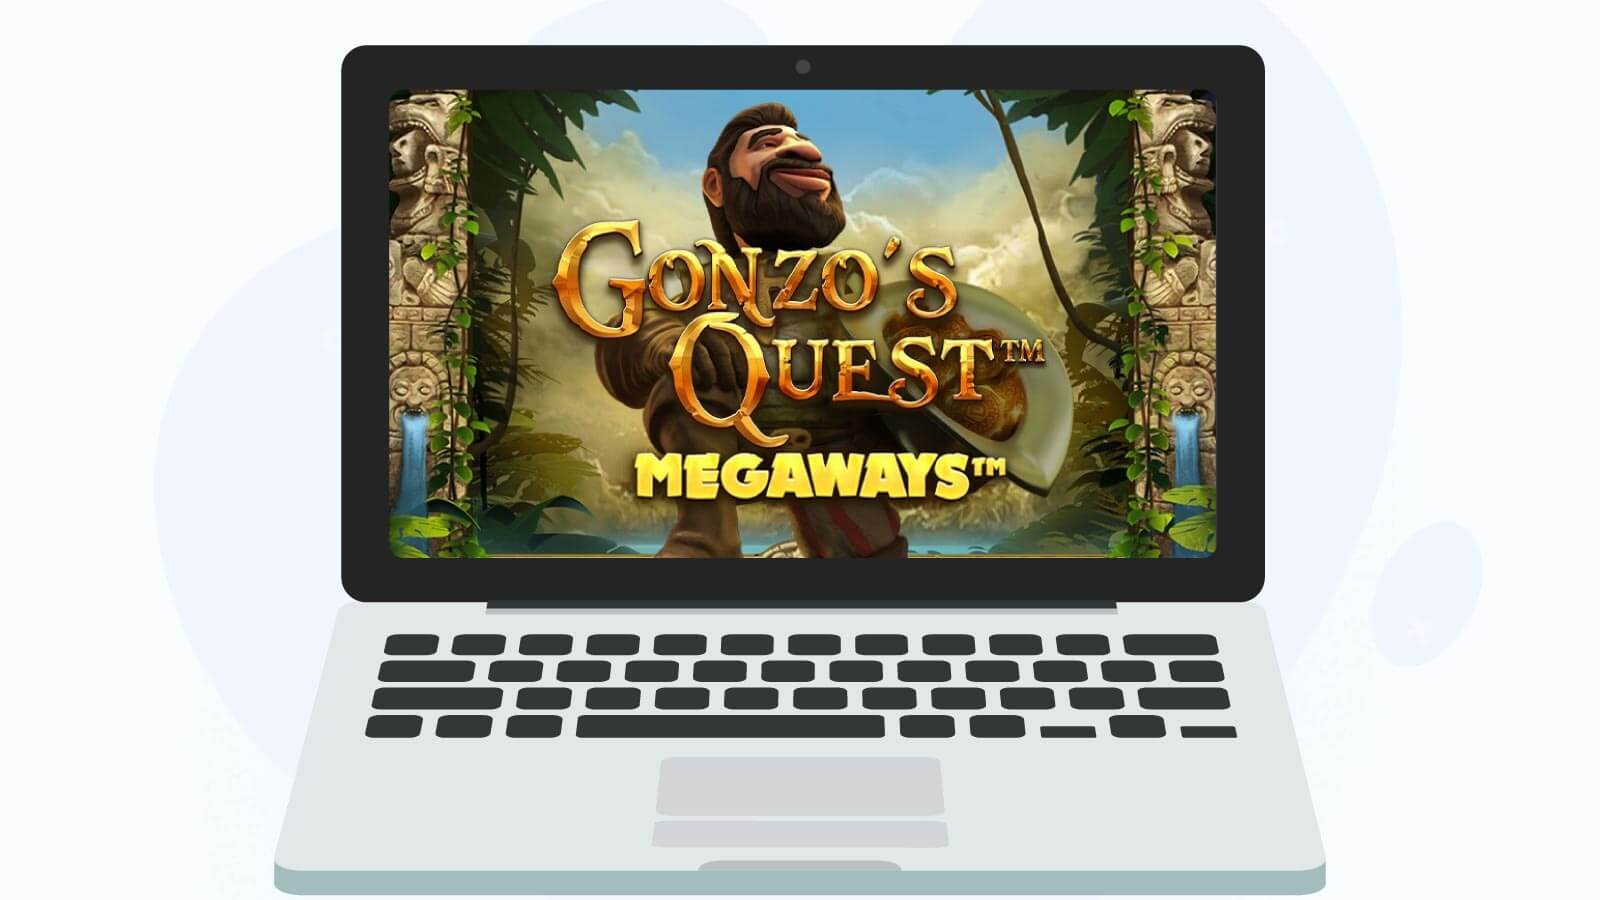 The sequel Gonzo’s Quest Megaways distinctive features